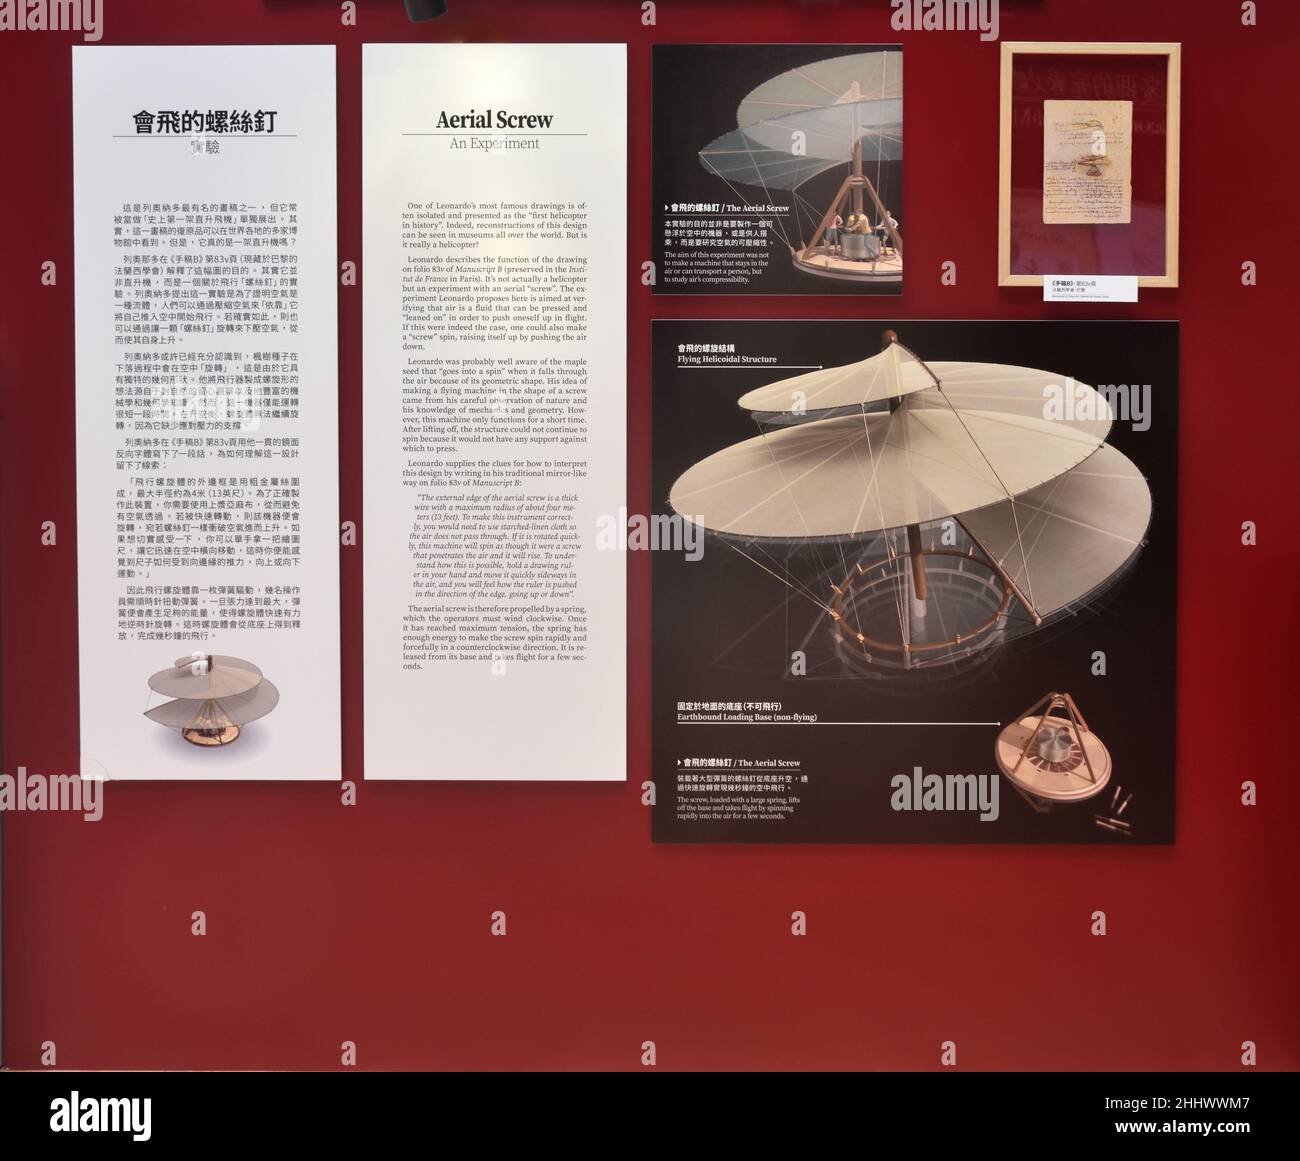 Cuadro y descripción del Aerial Screw en la exposición del 500th aniversario de Leonardo da Vinci en Hong Kong Foto de stock